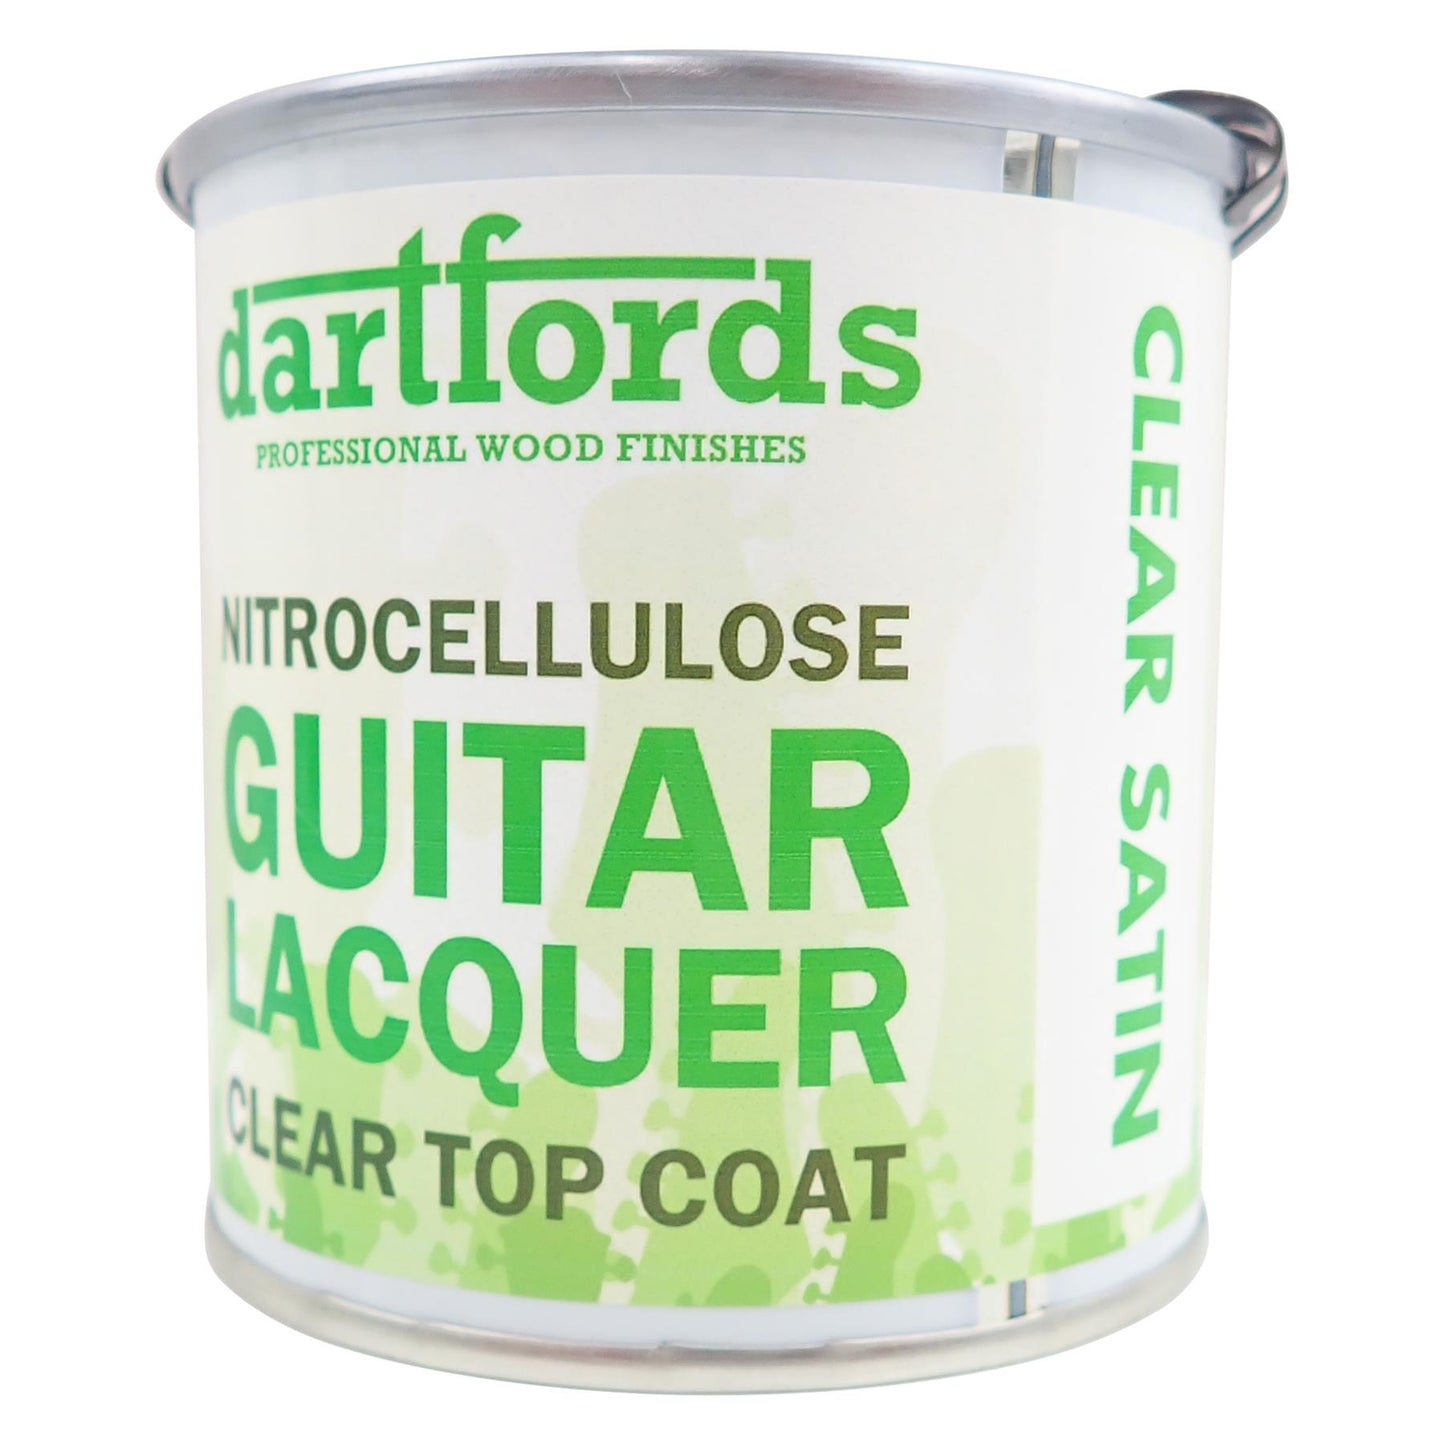 dartfords Satin Clear Nitrocellulose Guitar Lacquer - 230ml Tin